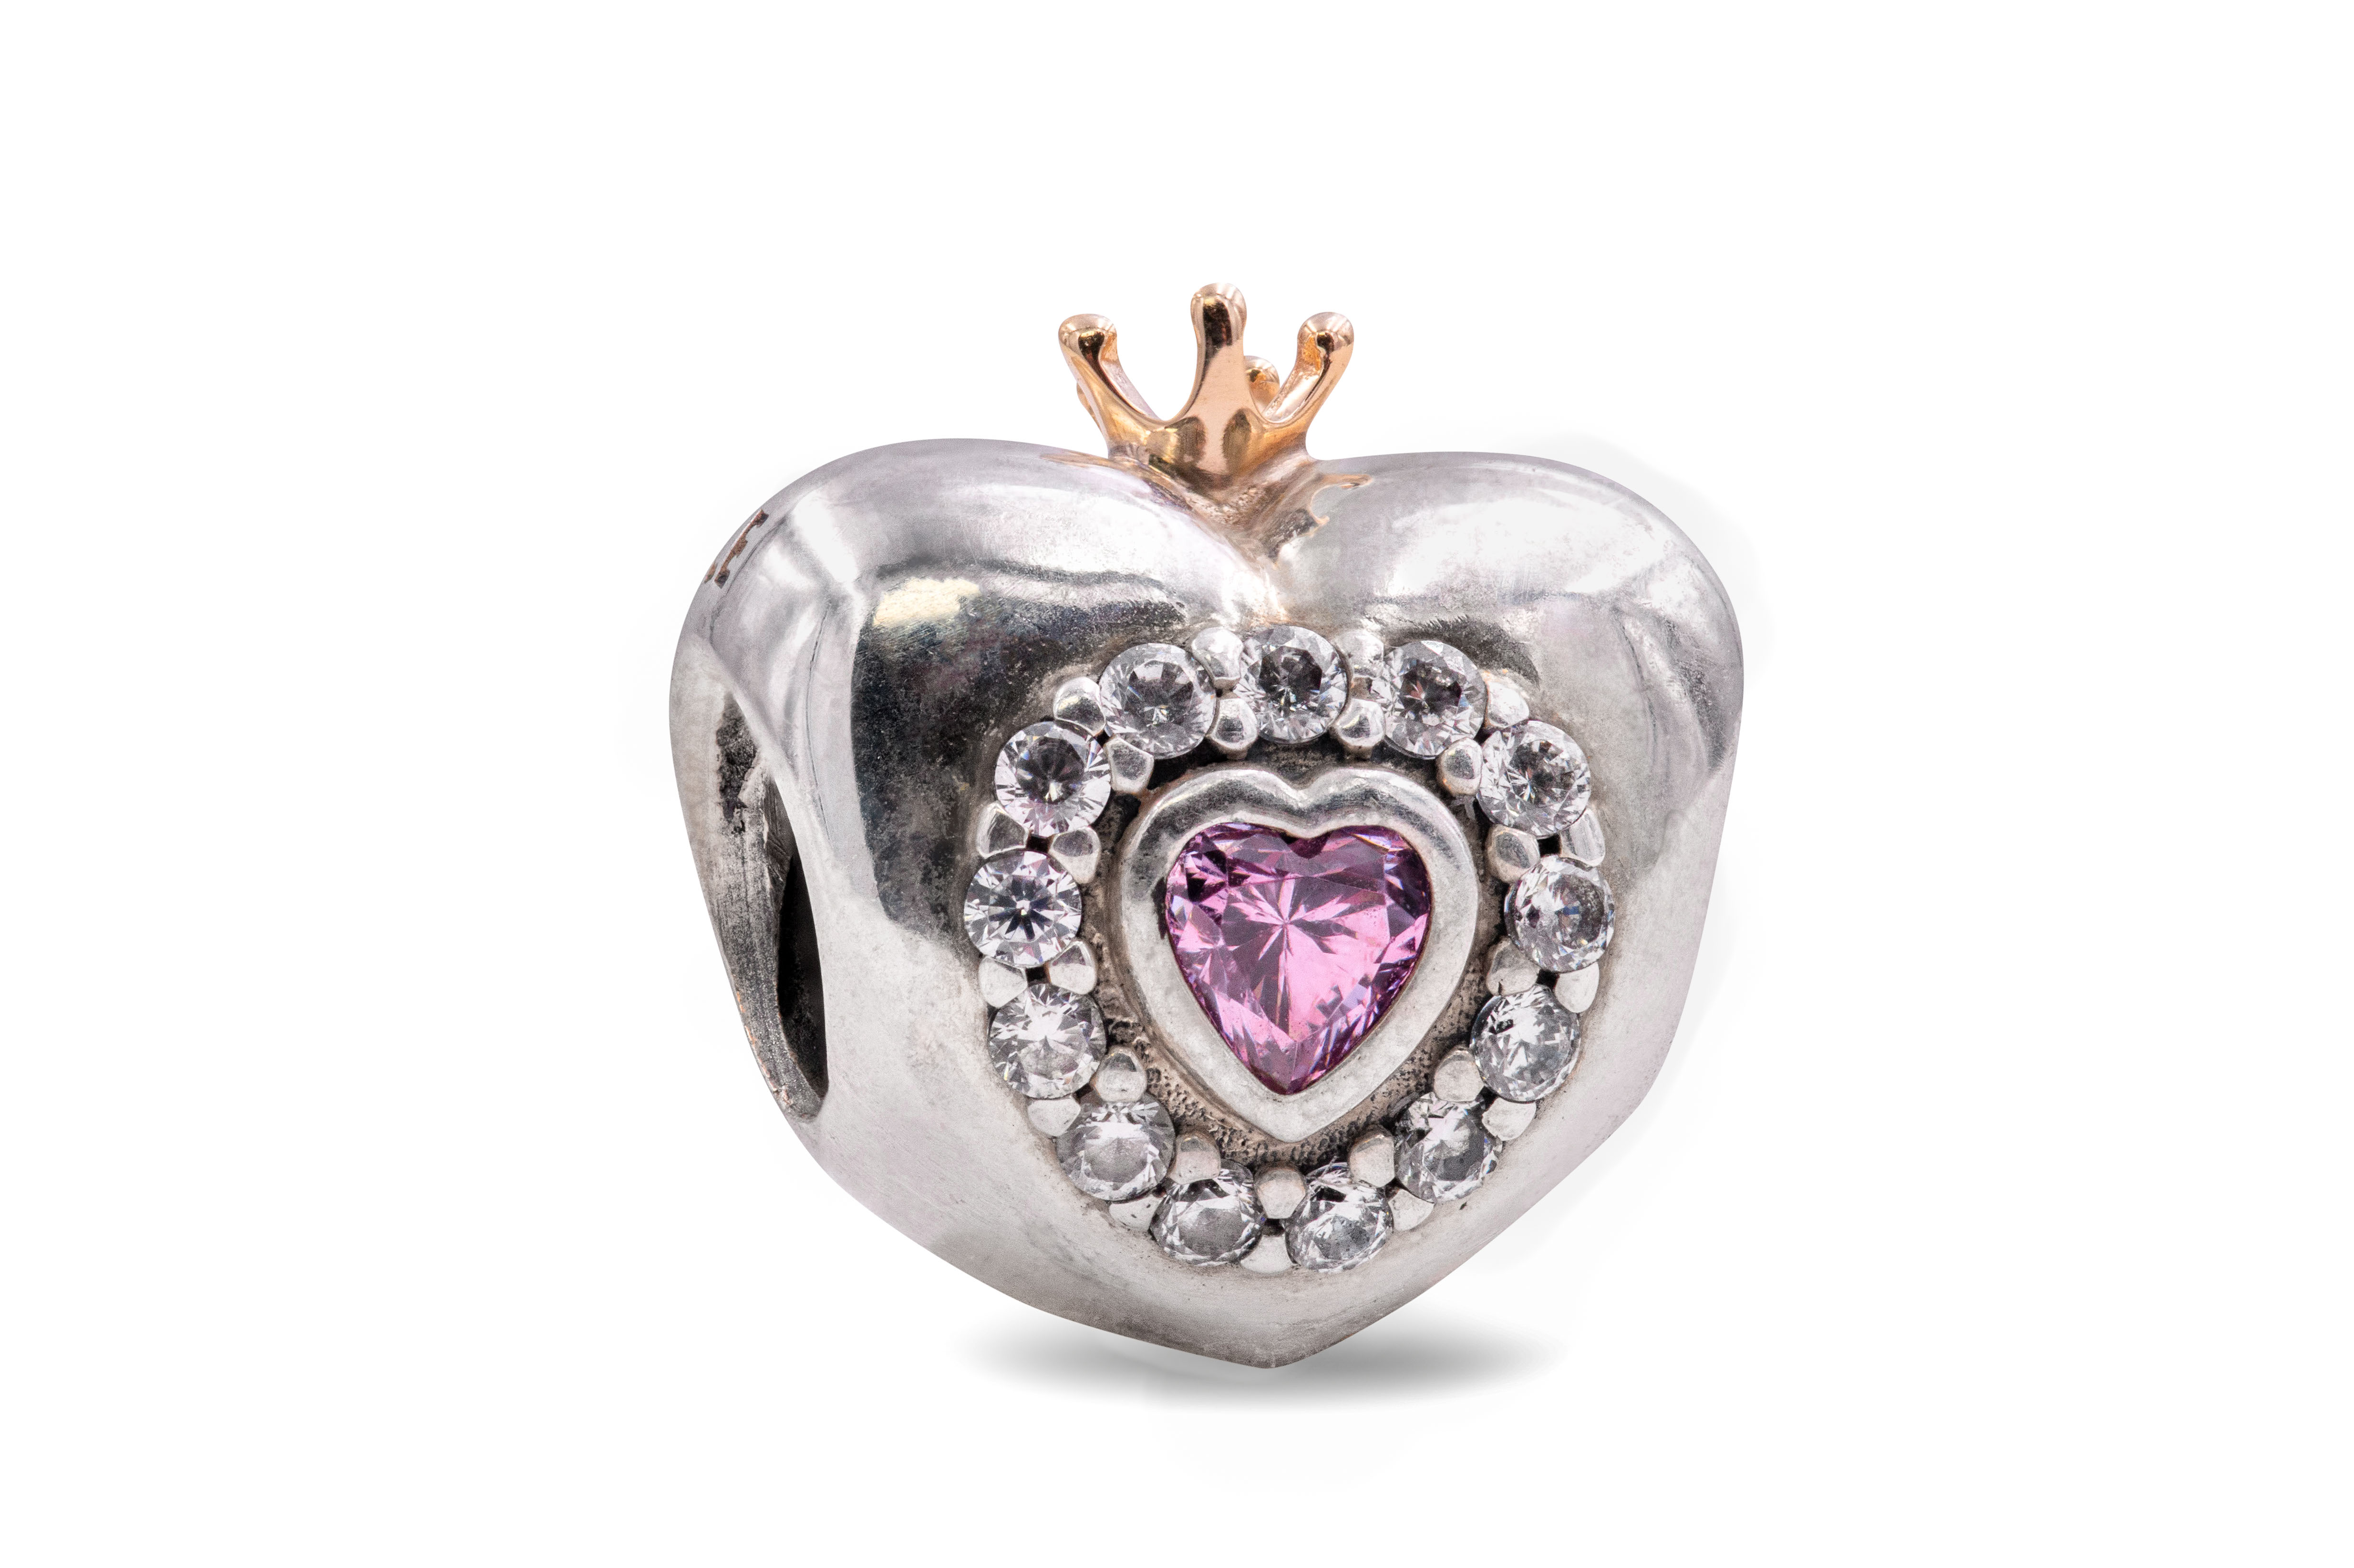 PANDORA Princess Heart Charm - Pink CZ - 791375PCZ 5700302259674 | eBay